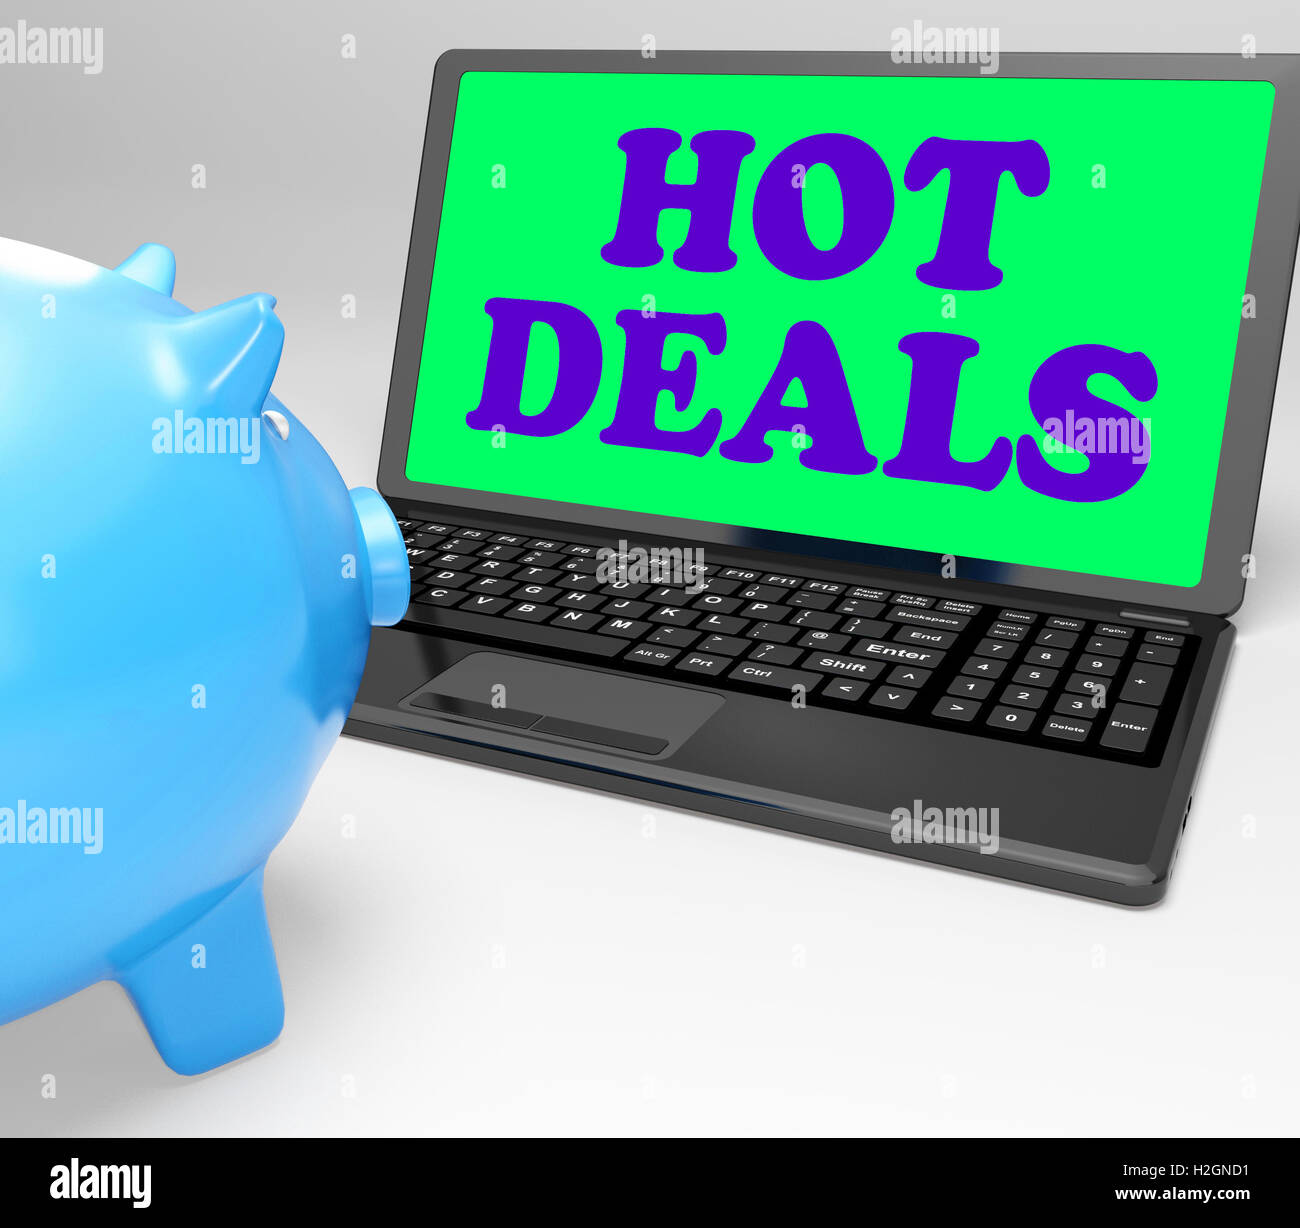 Hot Deals mezzi Laptop Best Buys e prezzo ridotto Foto Stock